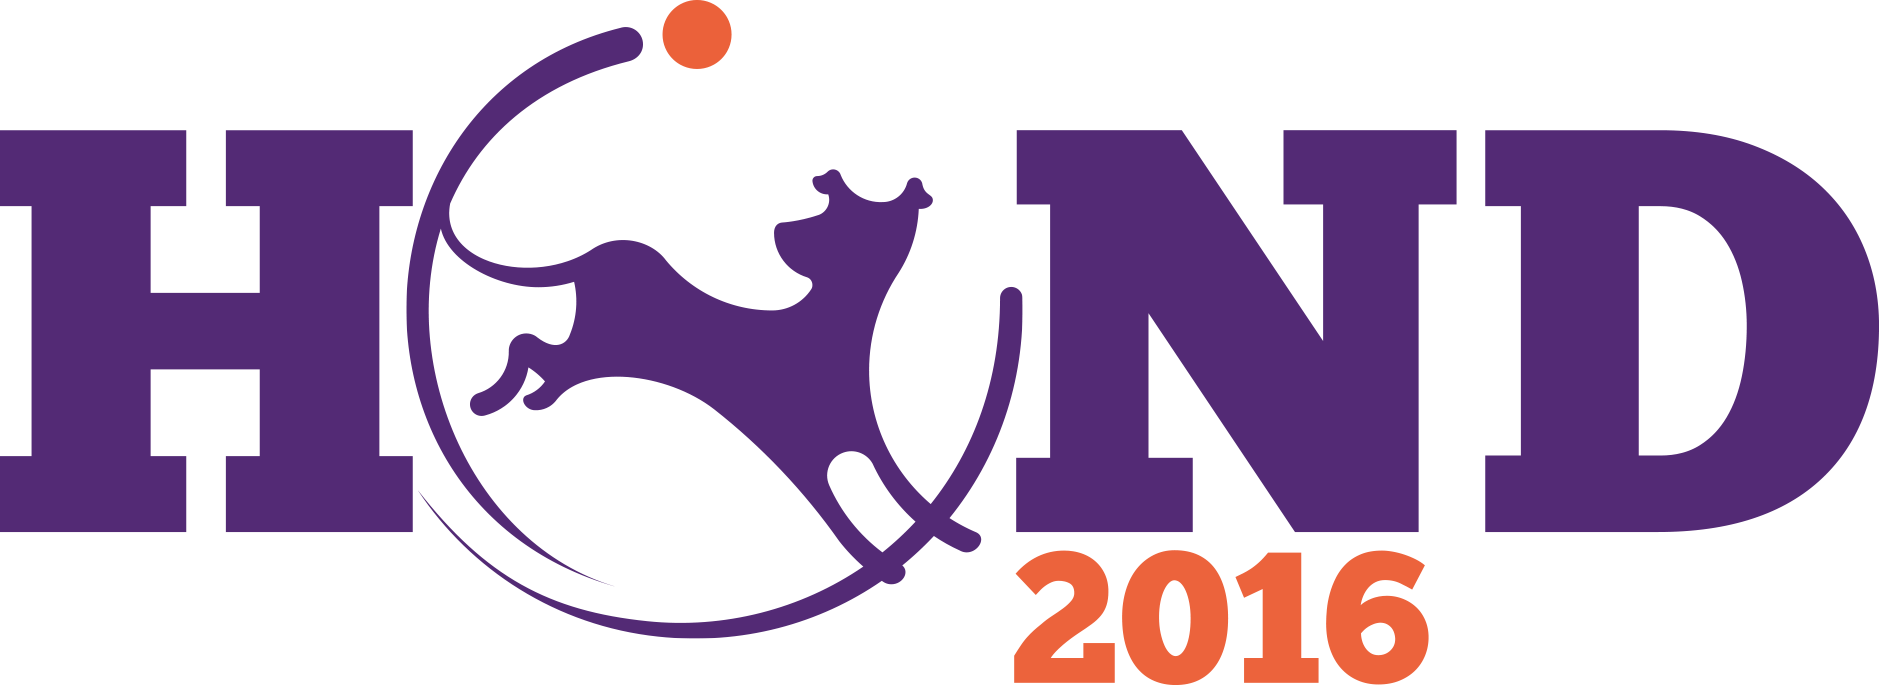 Hond2016 logo